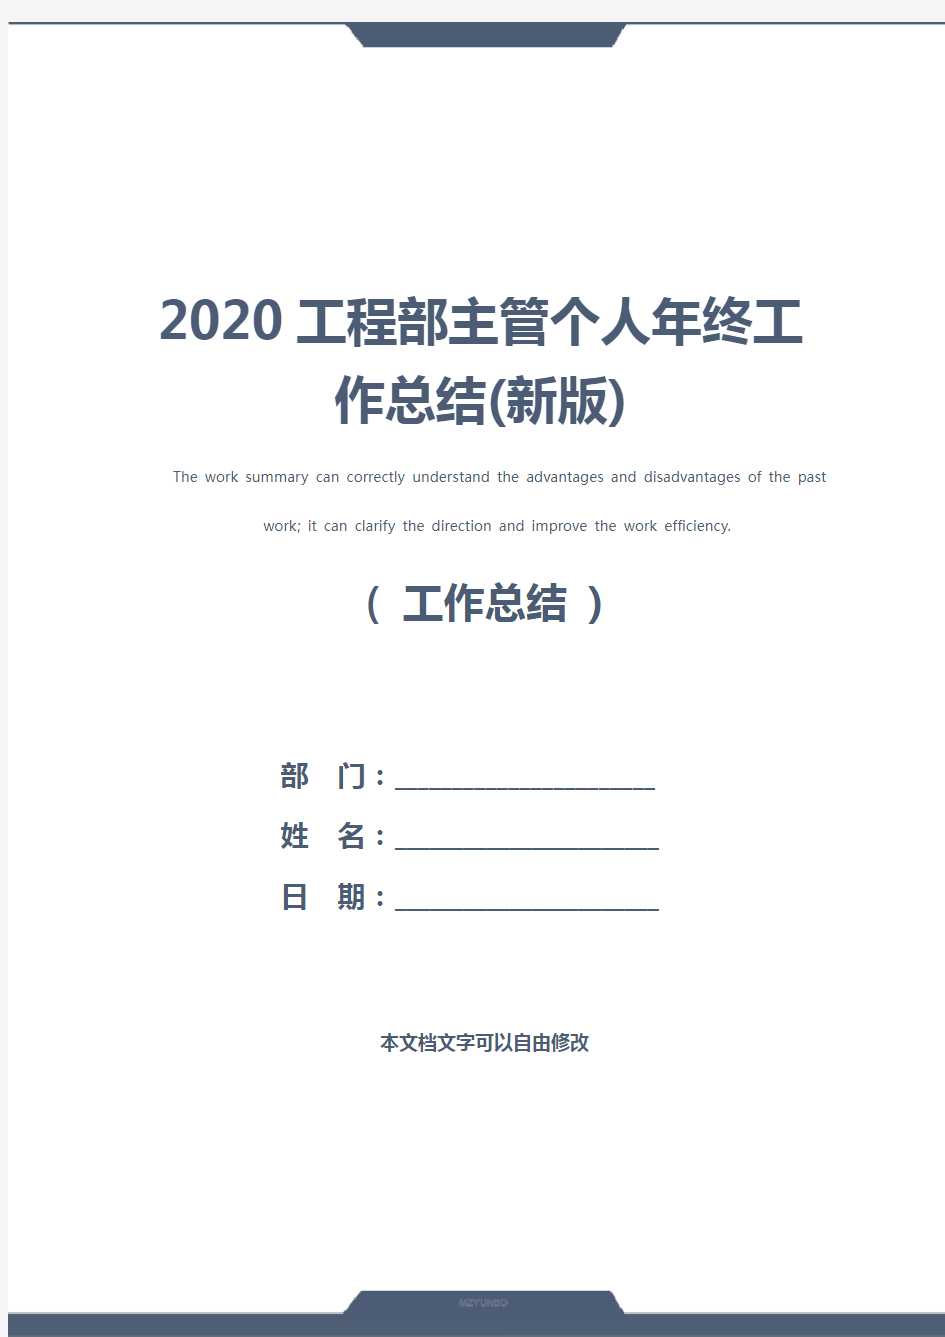 2020工程部主管个人年终工作总结(新版)